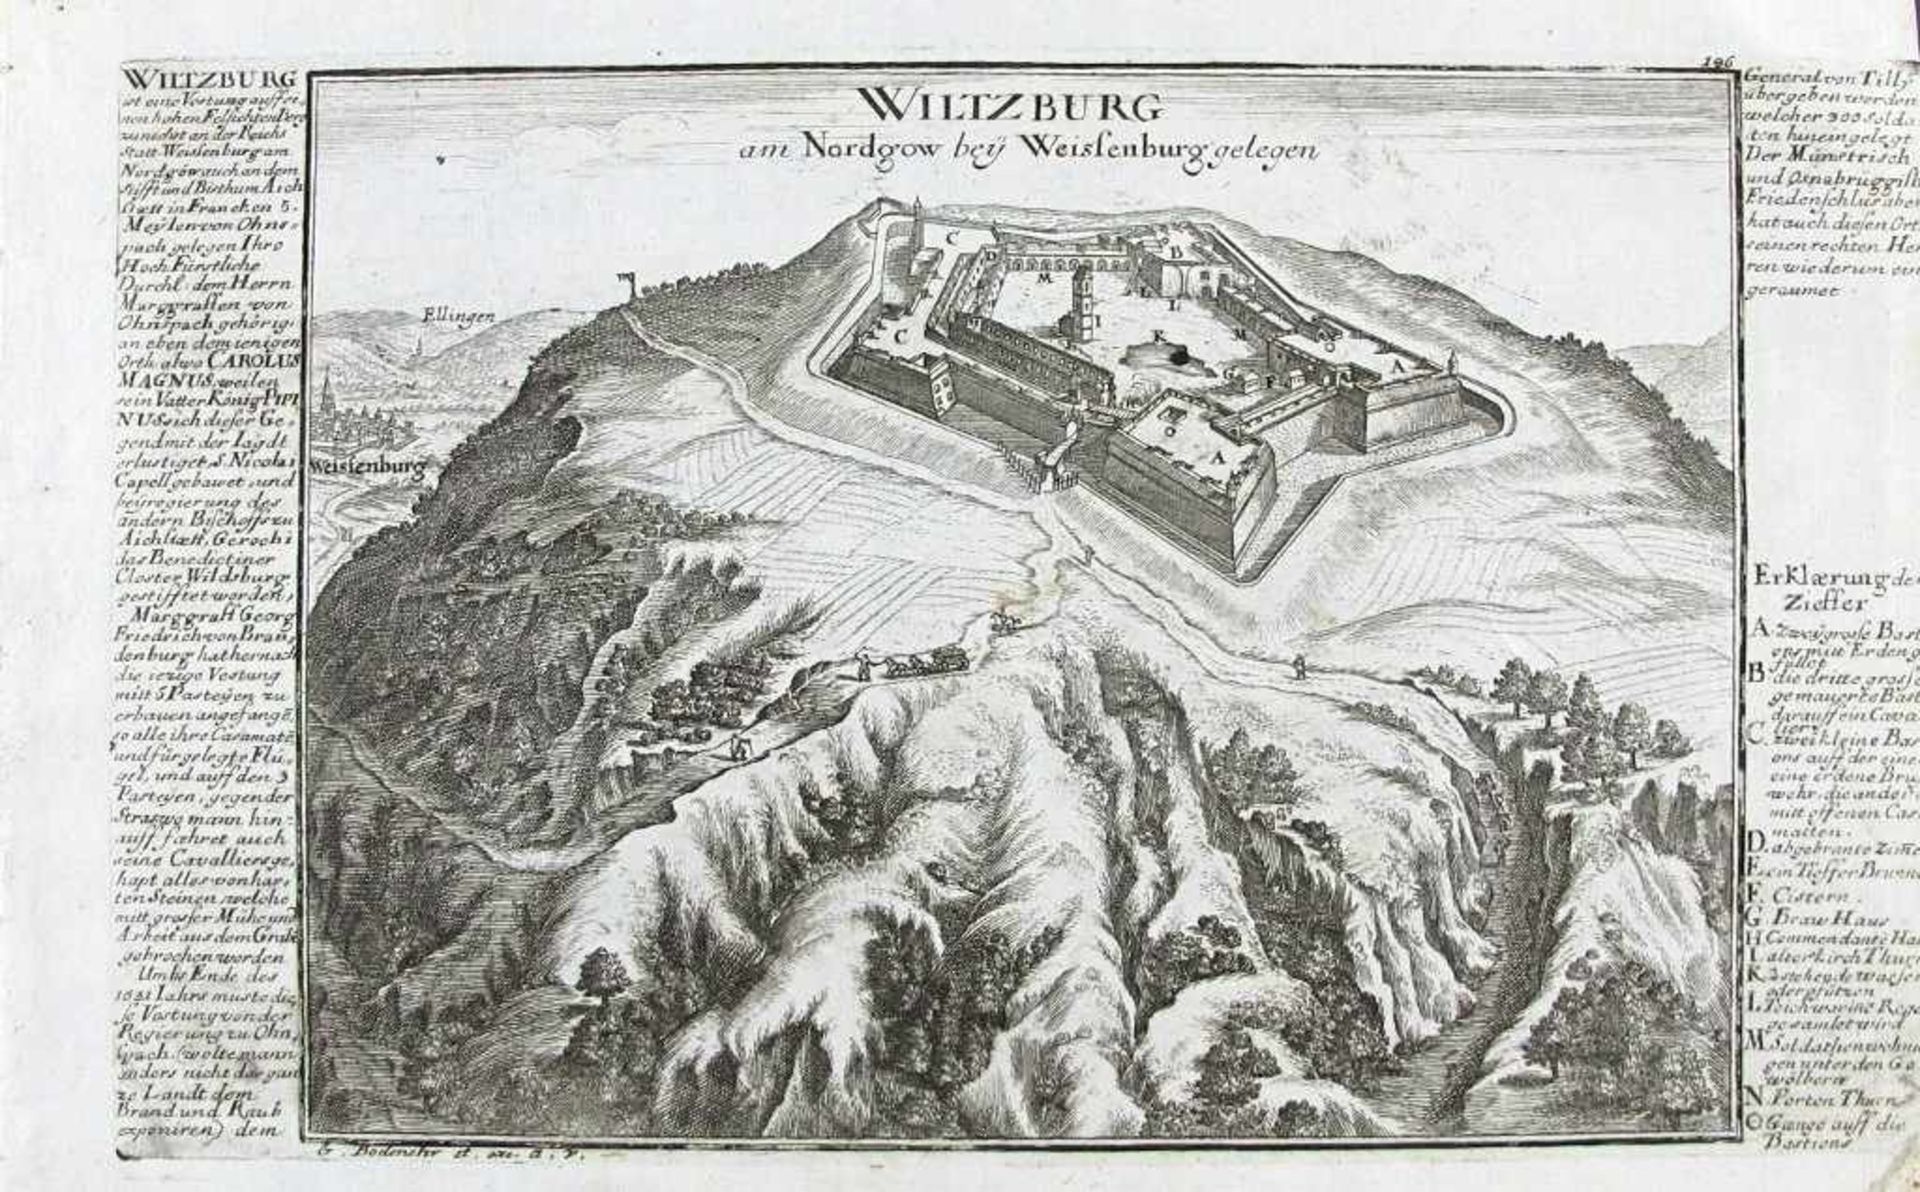 Wülzburg, Hohenzollernfestung. "Wiltzburg am Nordgow bey Weißenburg gelegen". Links und rechts lange